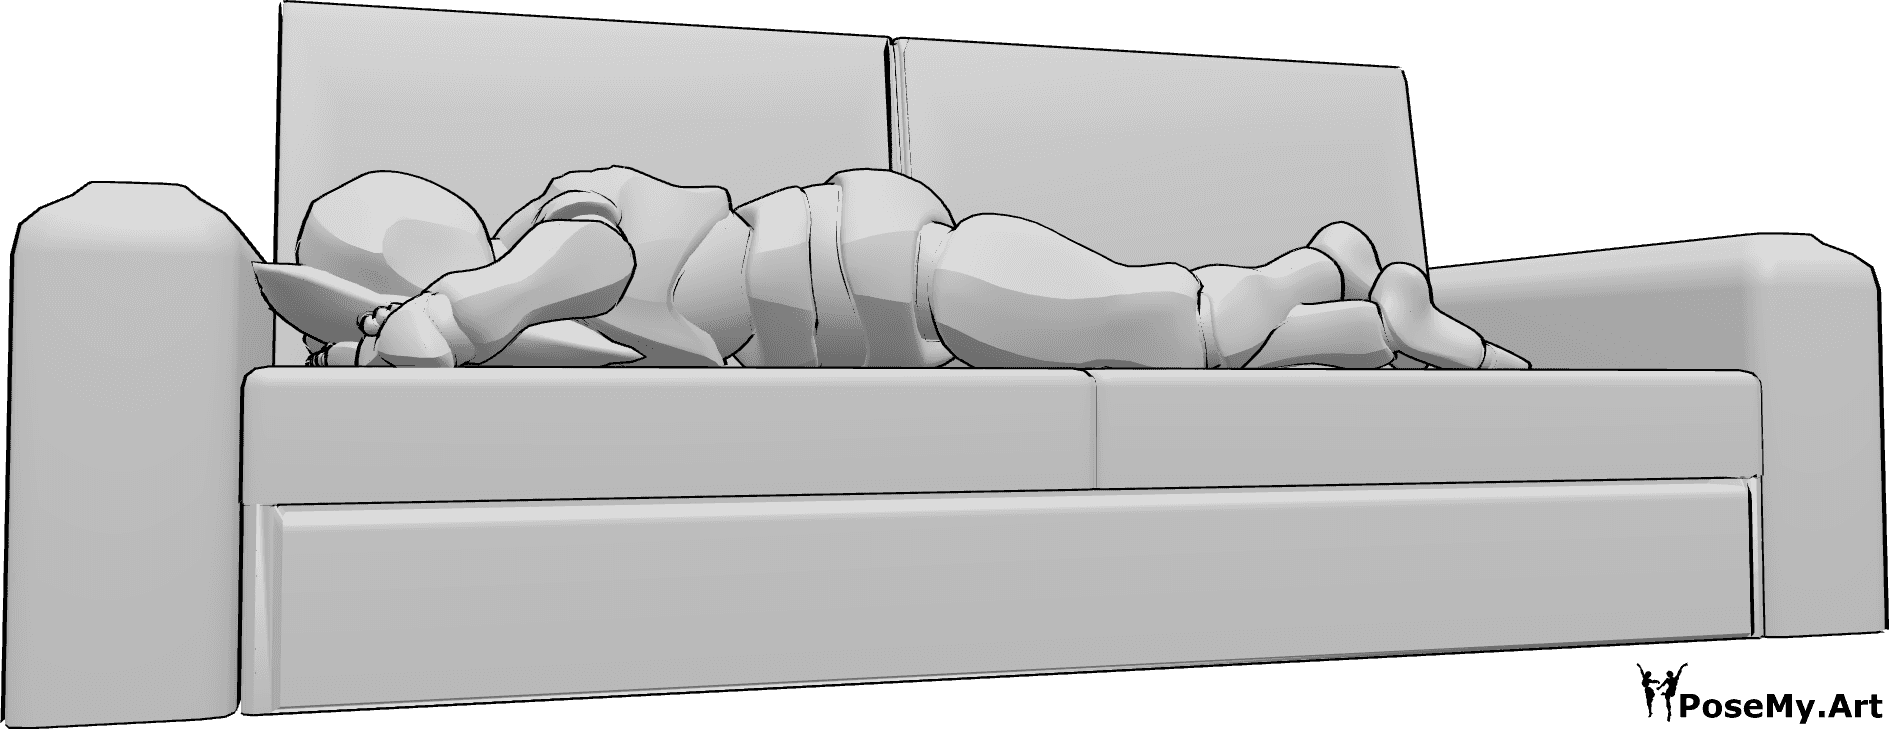 Posen-Referenz- Männliche liegende Couch-Pose - Das Männchen liegt auf dem Bauch auf der Couch und stützt seinen Kopf auf ein Kissen.